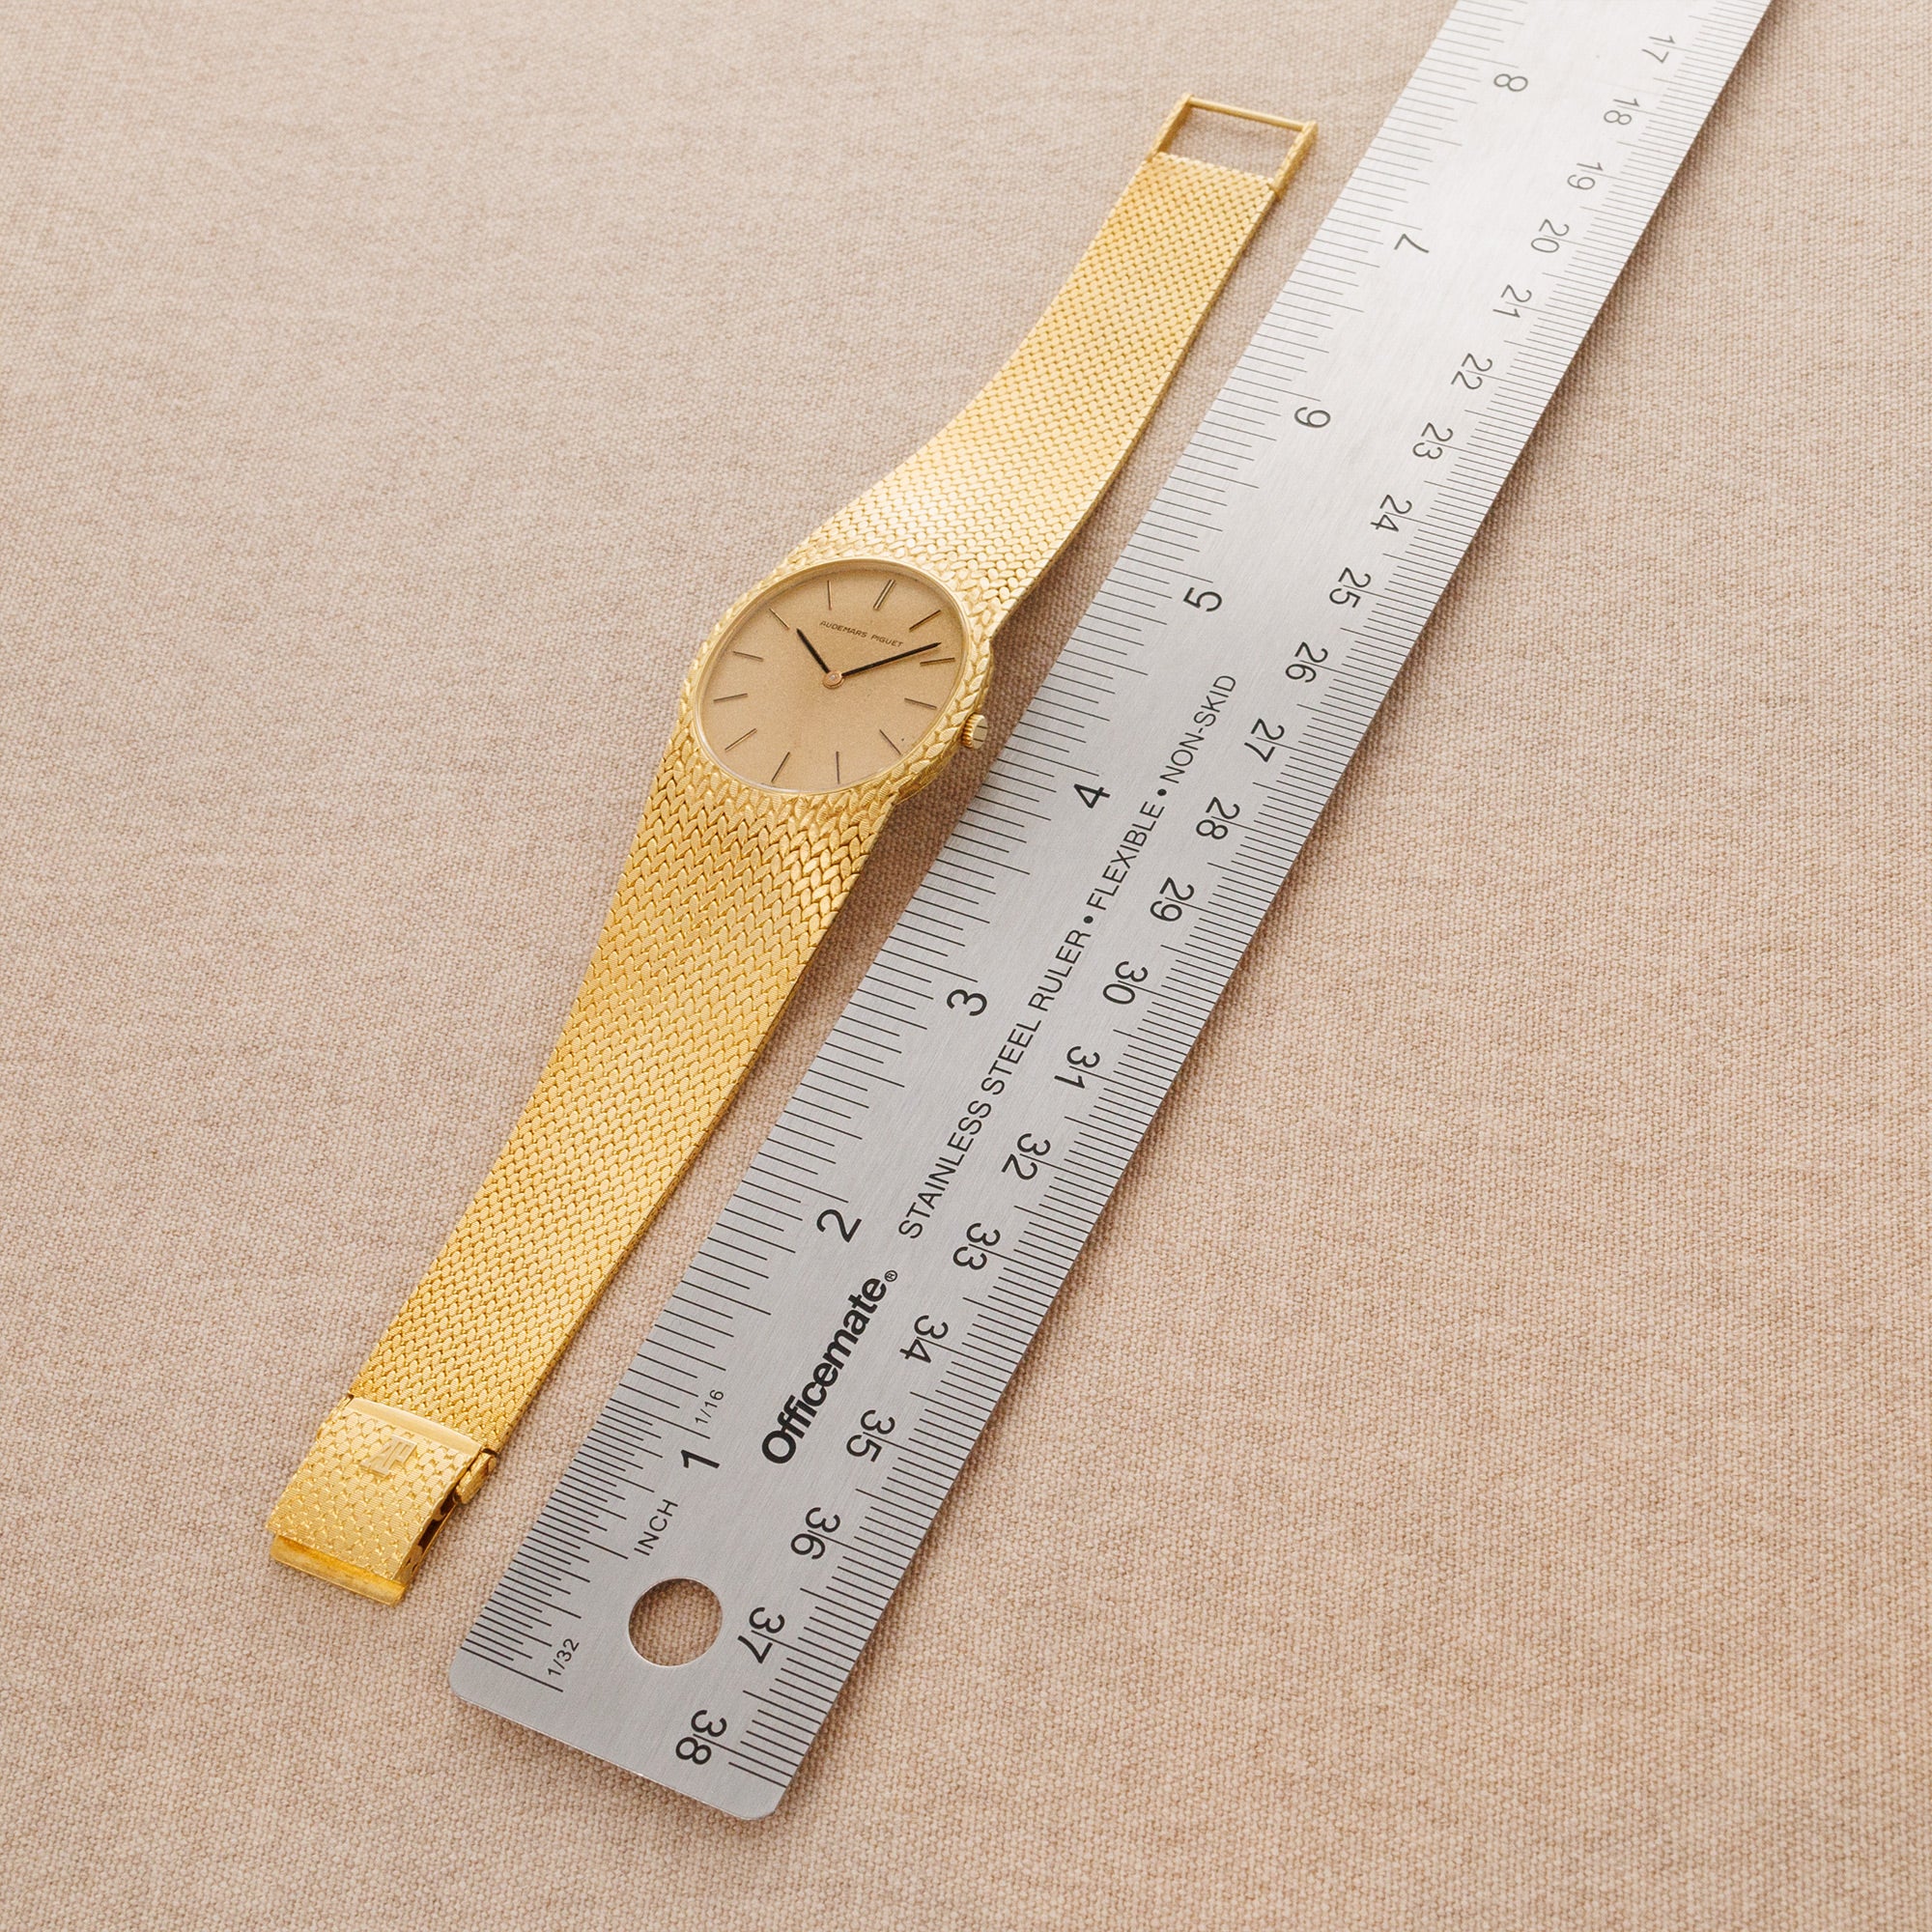 Audemars Piguet - Audemars Piguet Yellow Gold Watch - The Keystone Watches